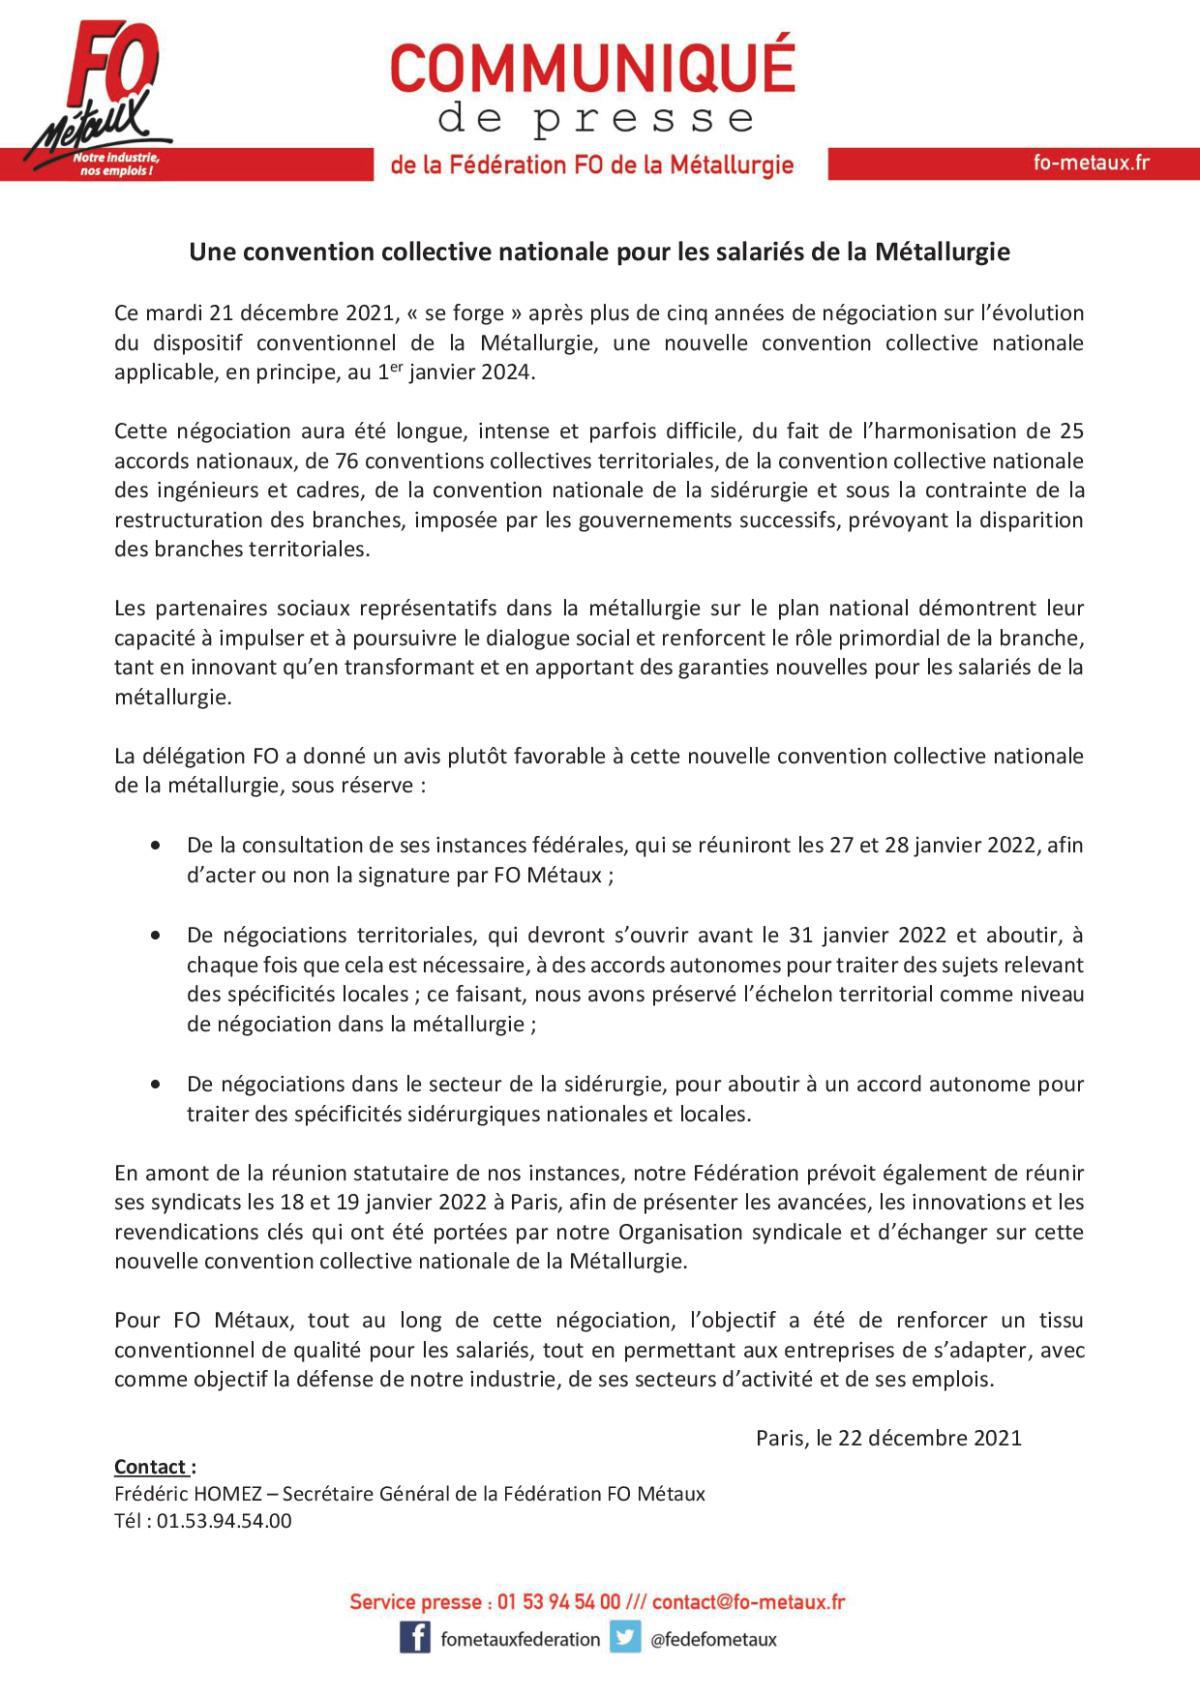 Communiqué de presse "Une convention collective nationale pour les salariés de la Métallurgie"